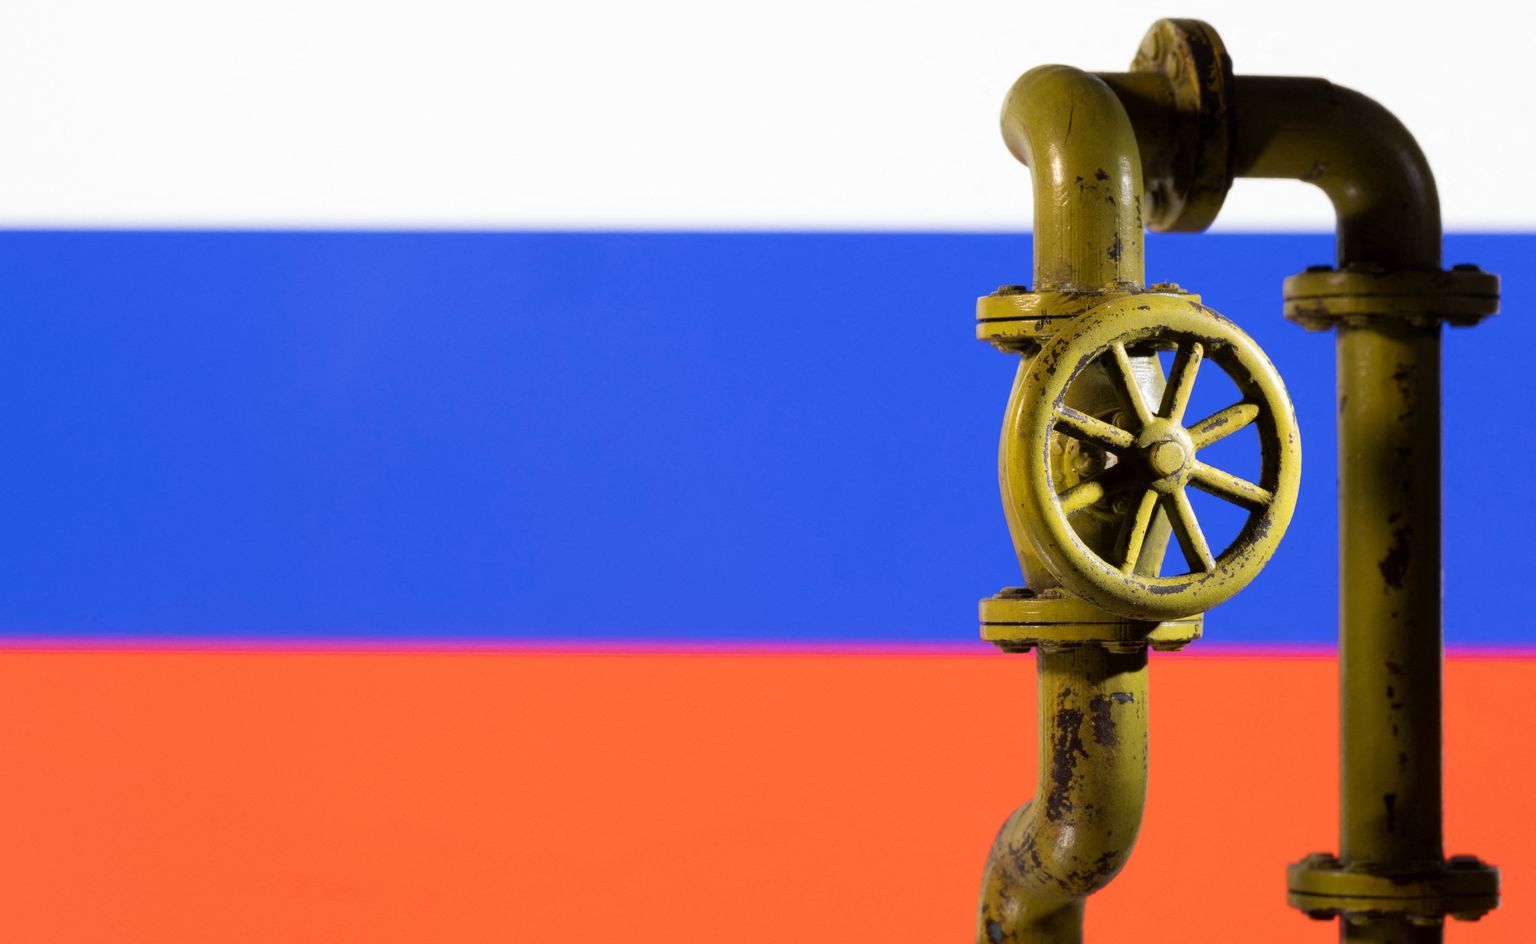 Venemaa lipu ja maagaasijuhtme illustratsioon.